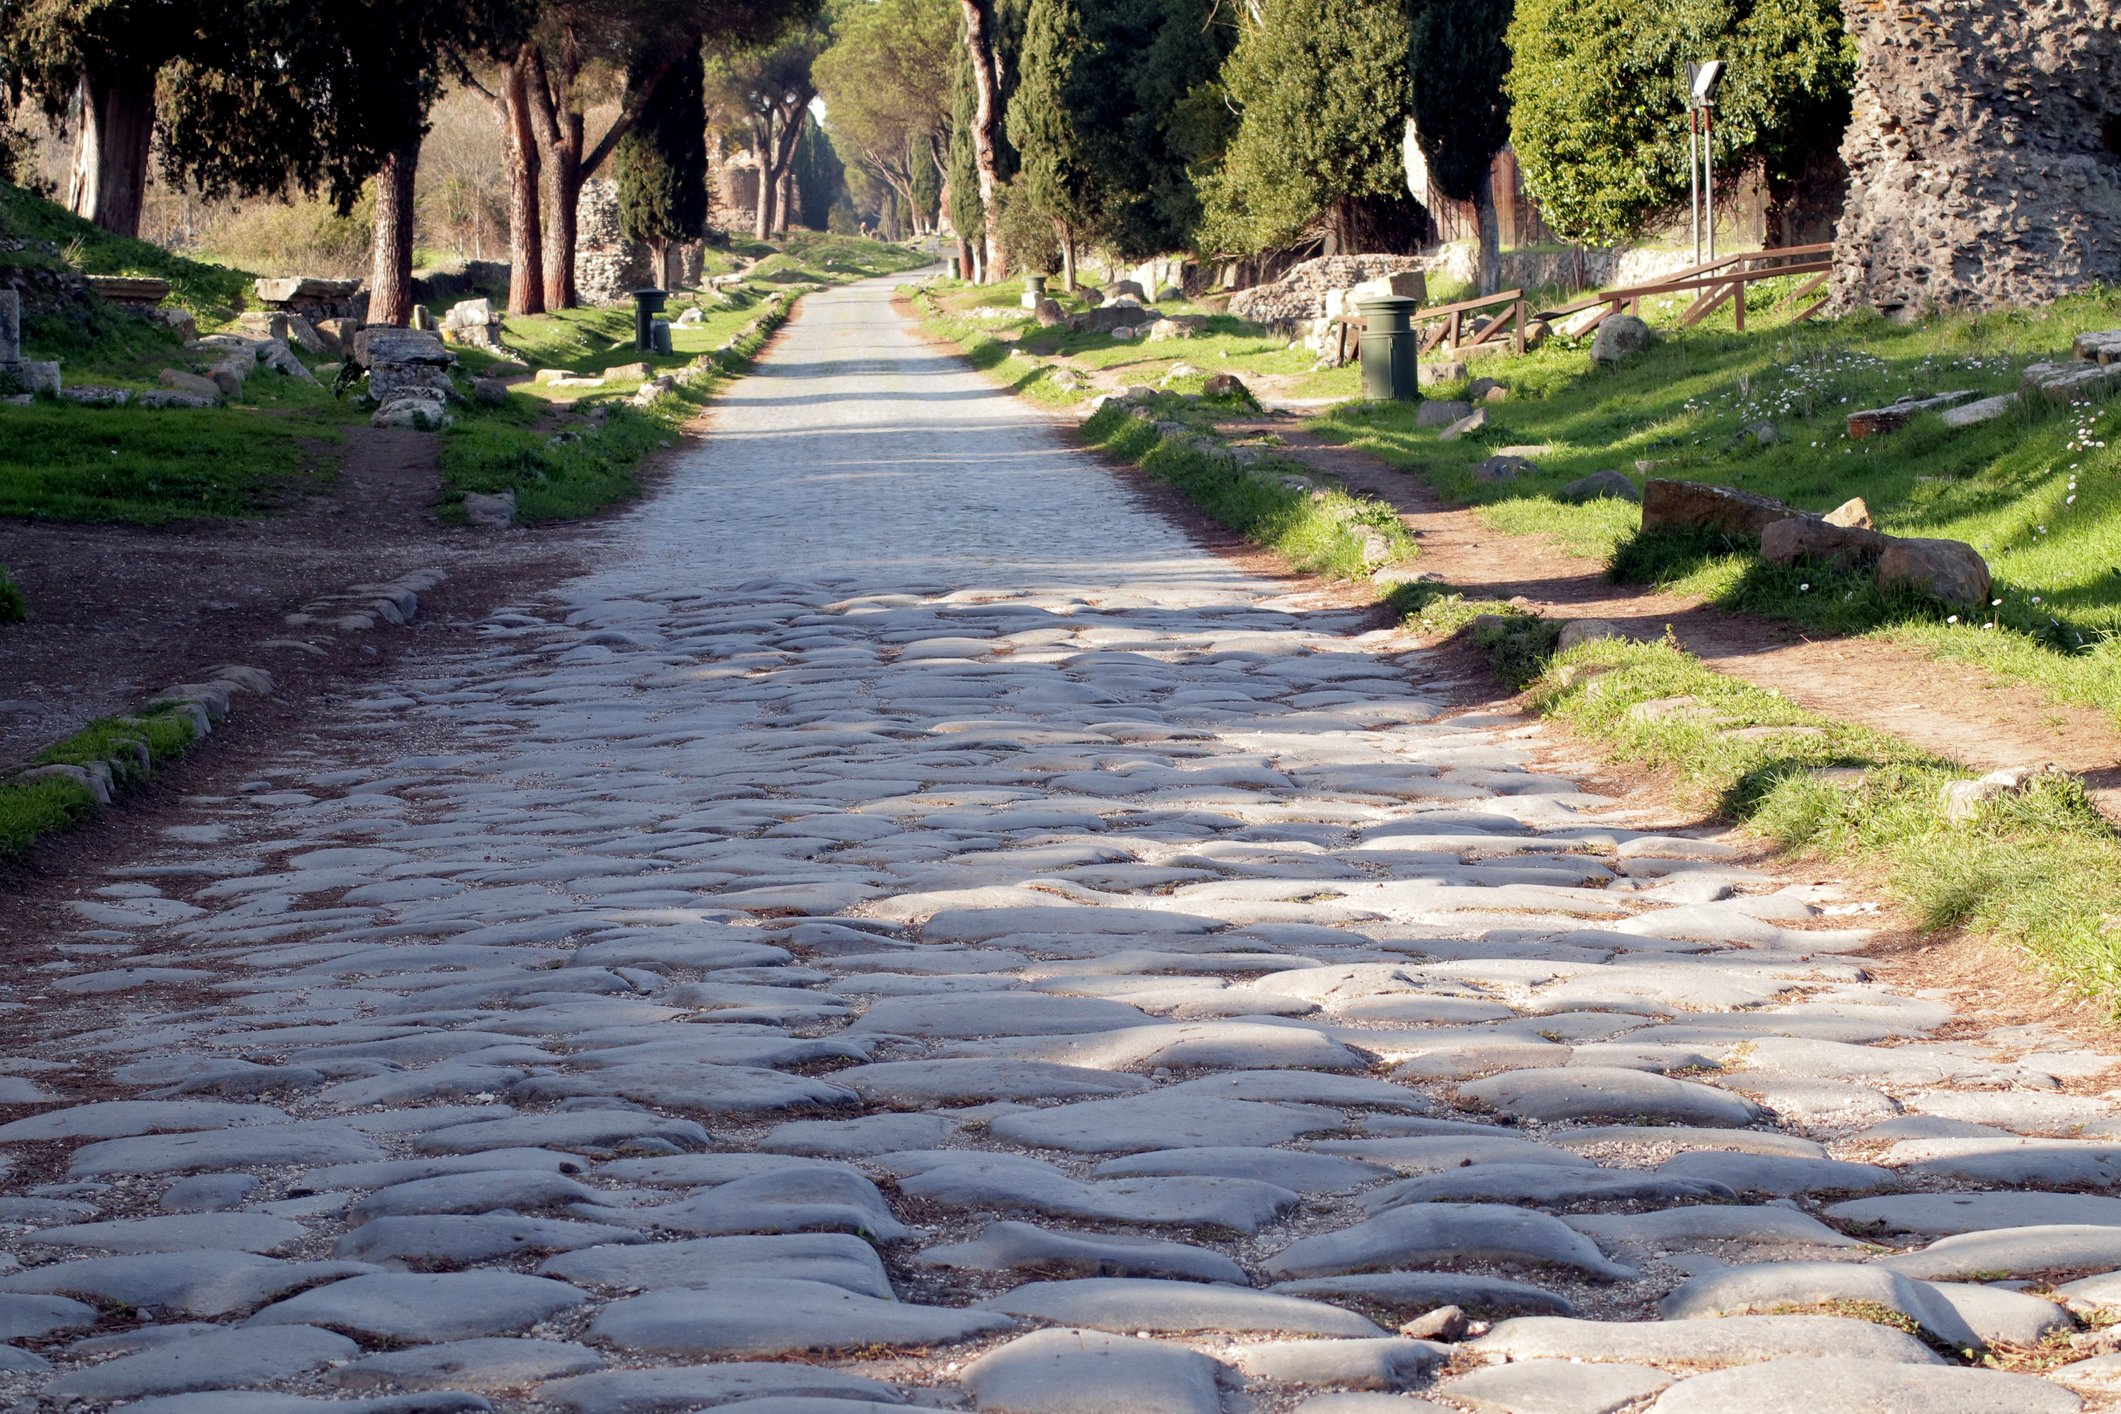 Via Appia Antica in Rome